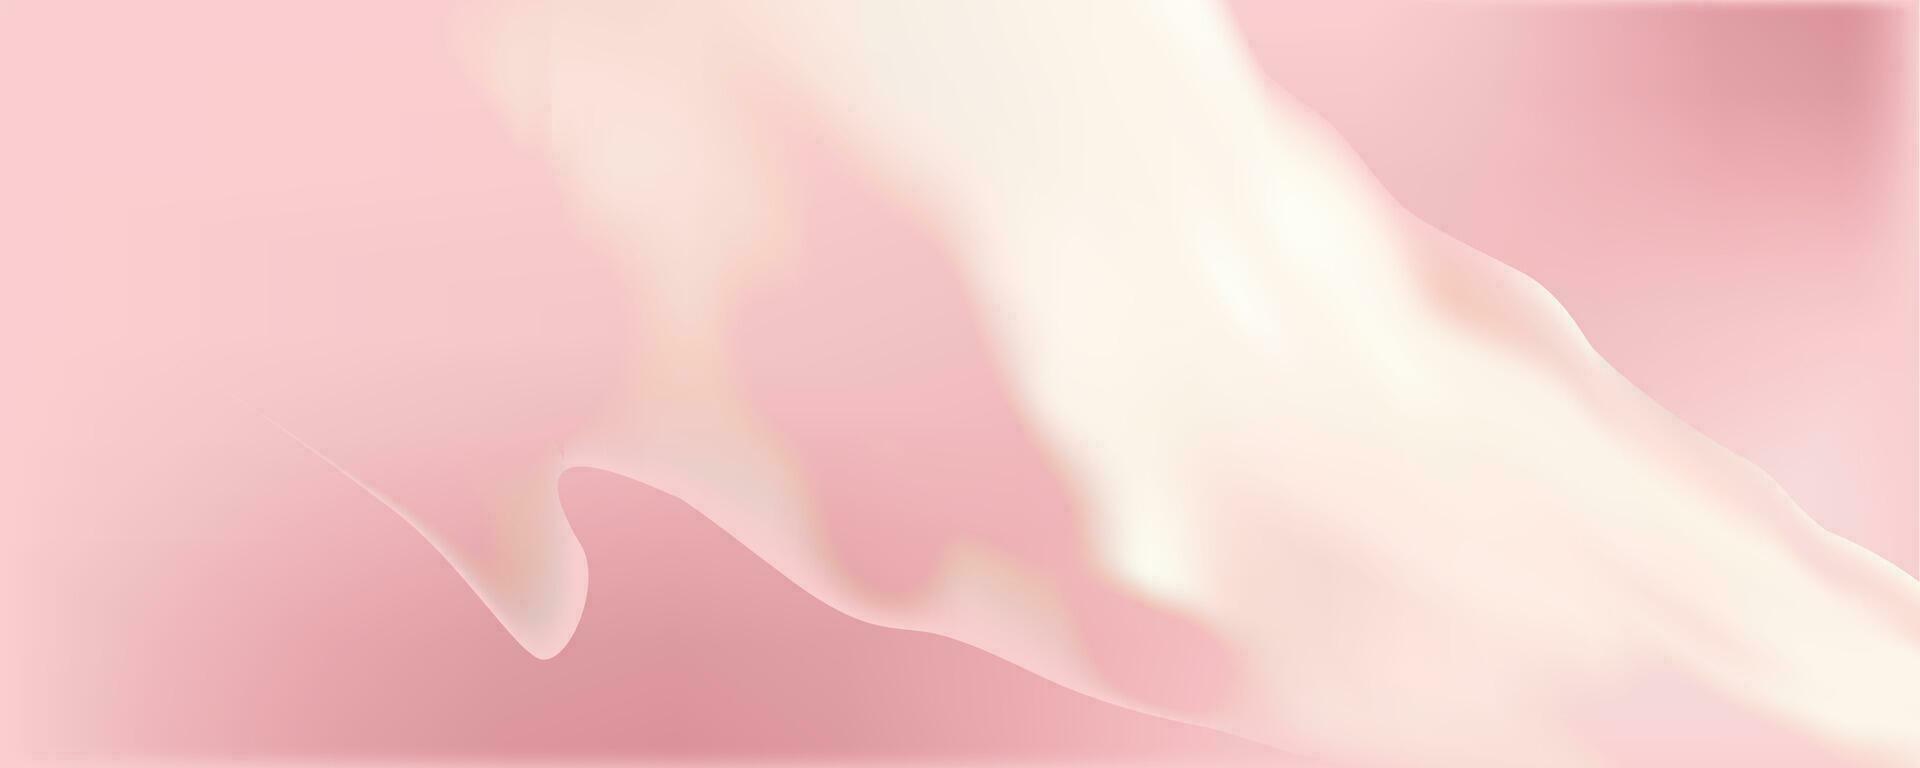 roze verspreiden structuur van room, ijs room of glazuur. licht achtergrond van aardbei nagerecht, gelei of banketbakkerij room. vector